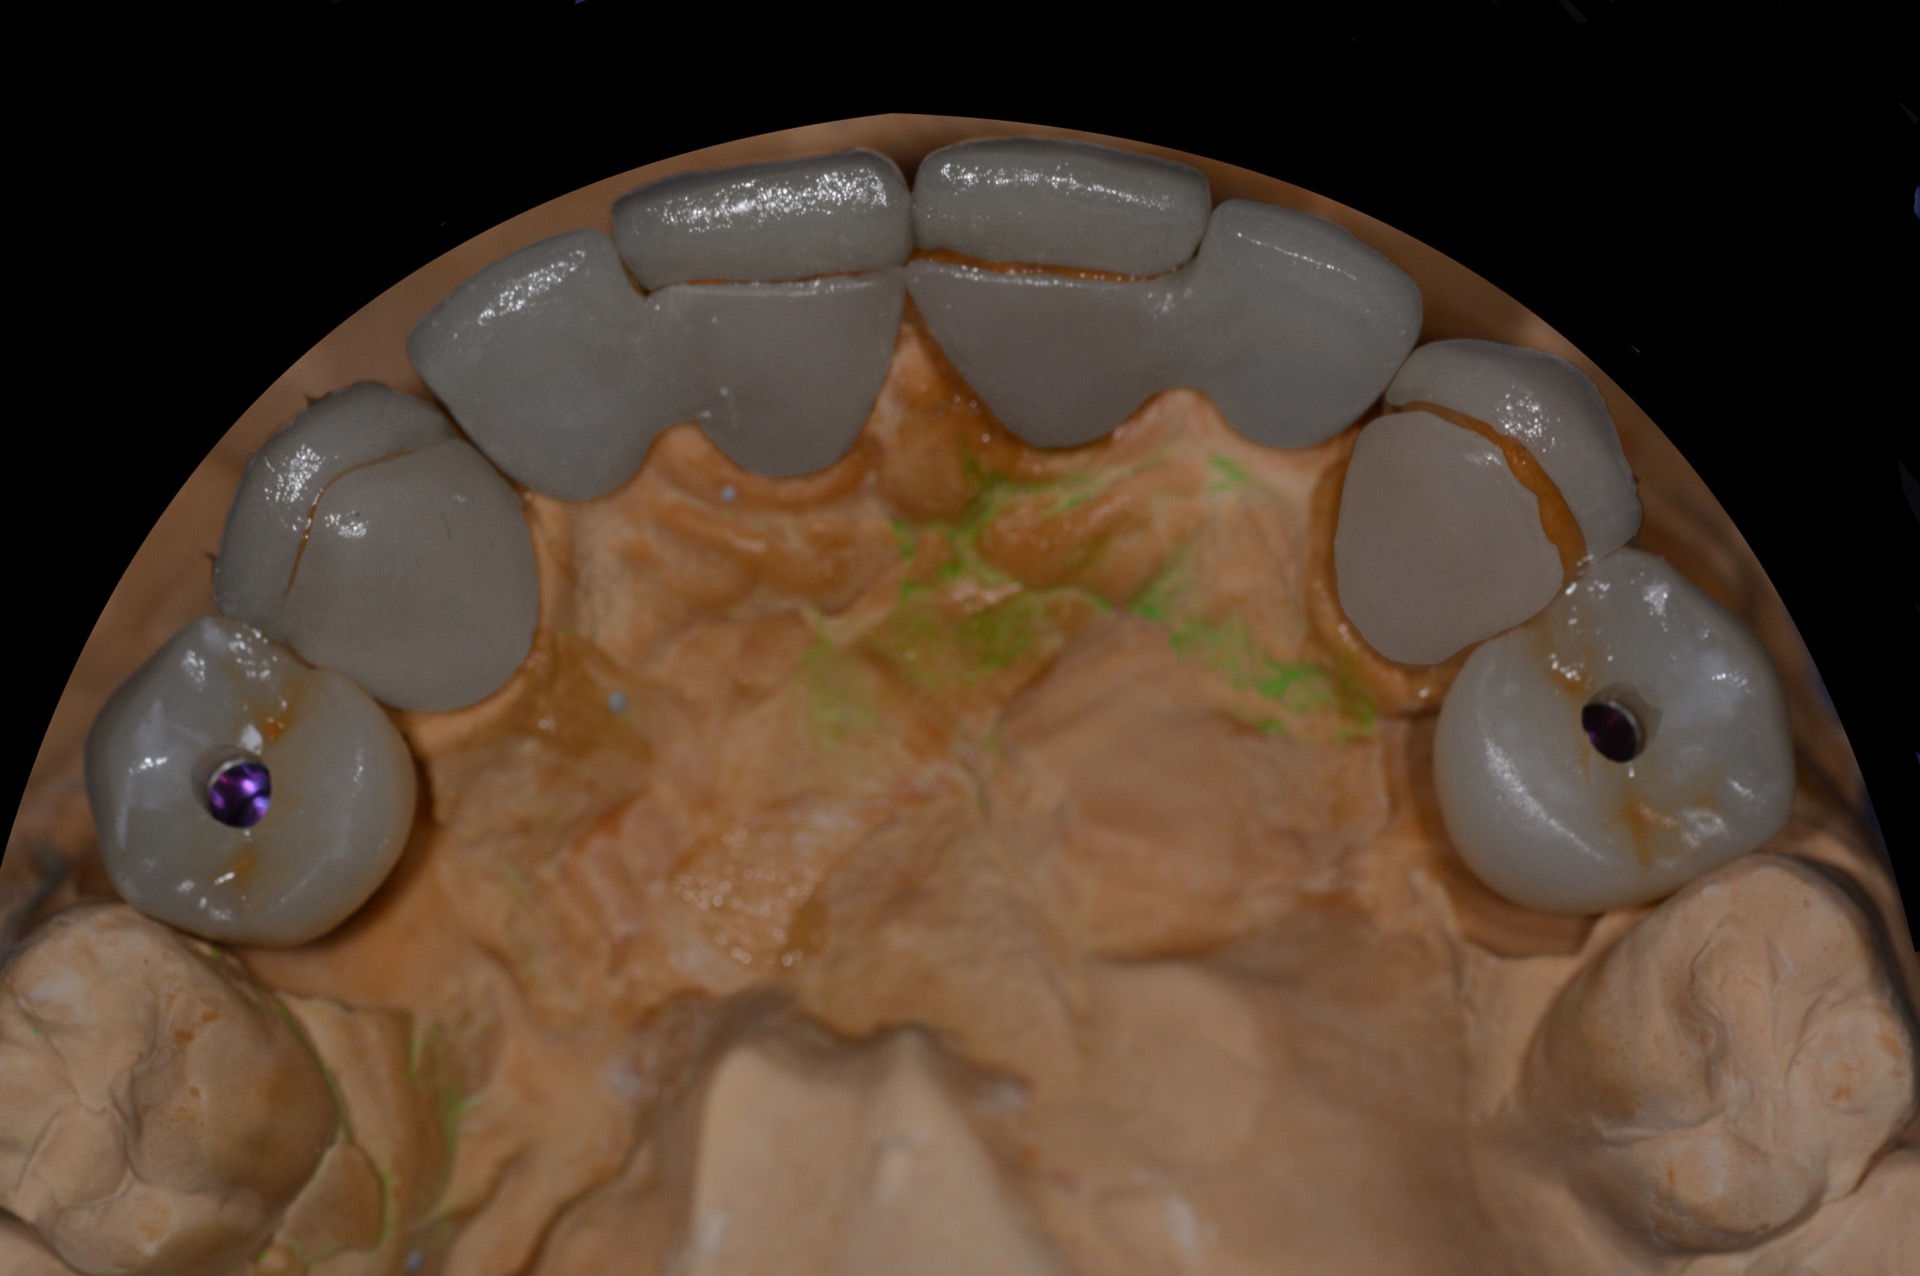 Μασητική άποψη των αποκαταστάσεων της άνω γνάθου, στο γύψινο εκμαγείο, πριν την τοποθέτηση στο στόμα 